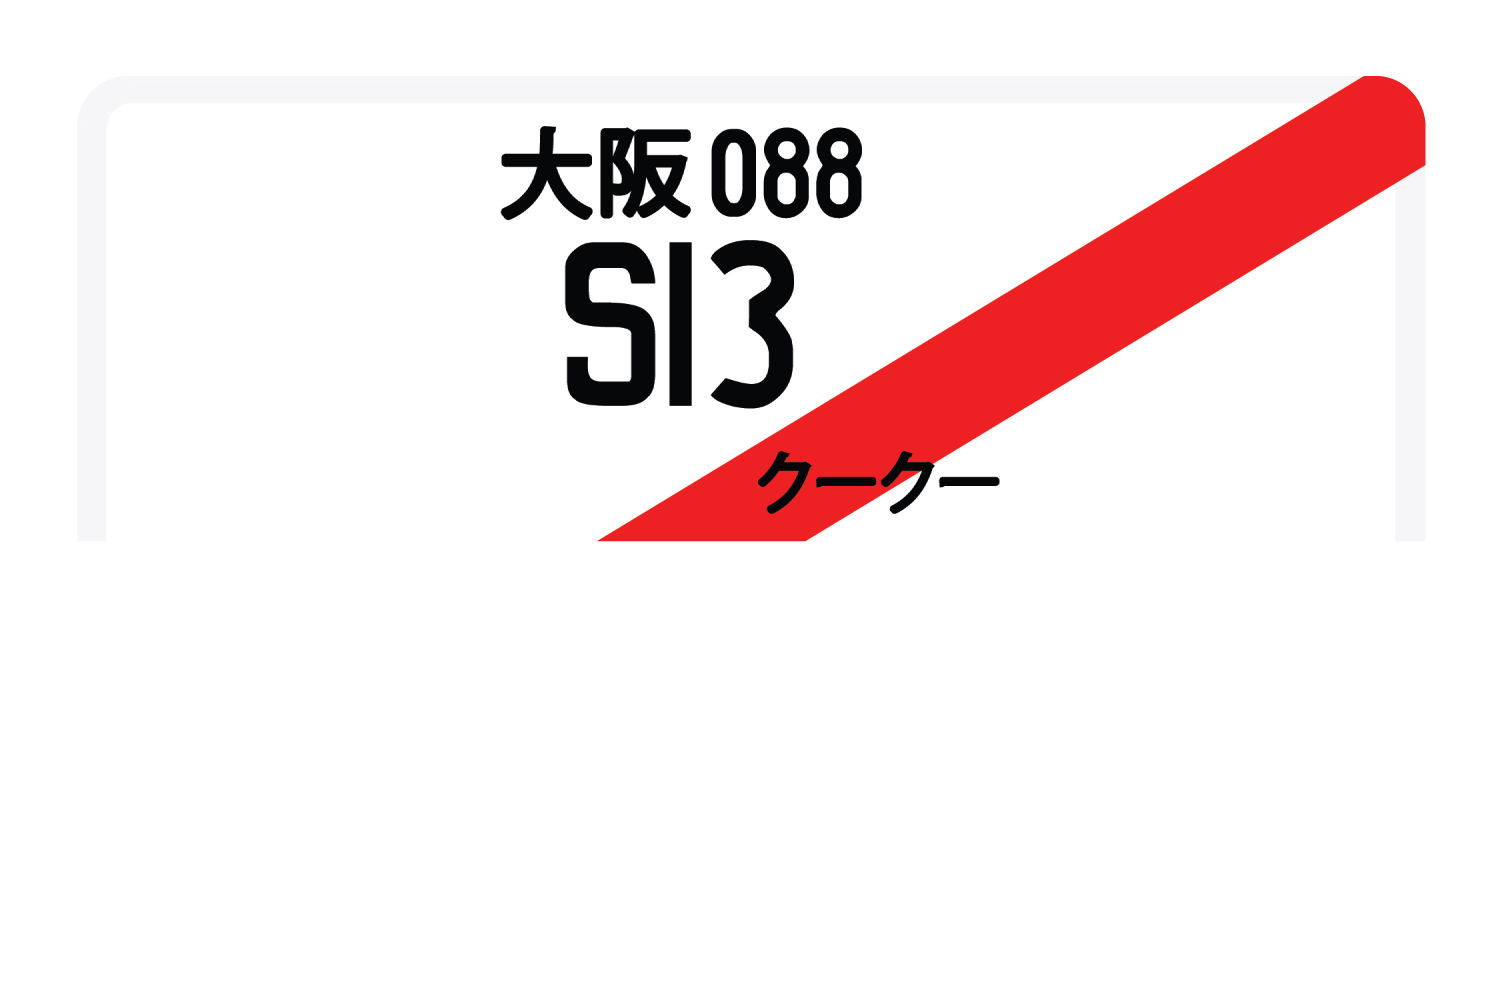 S13